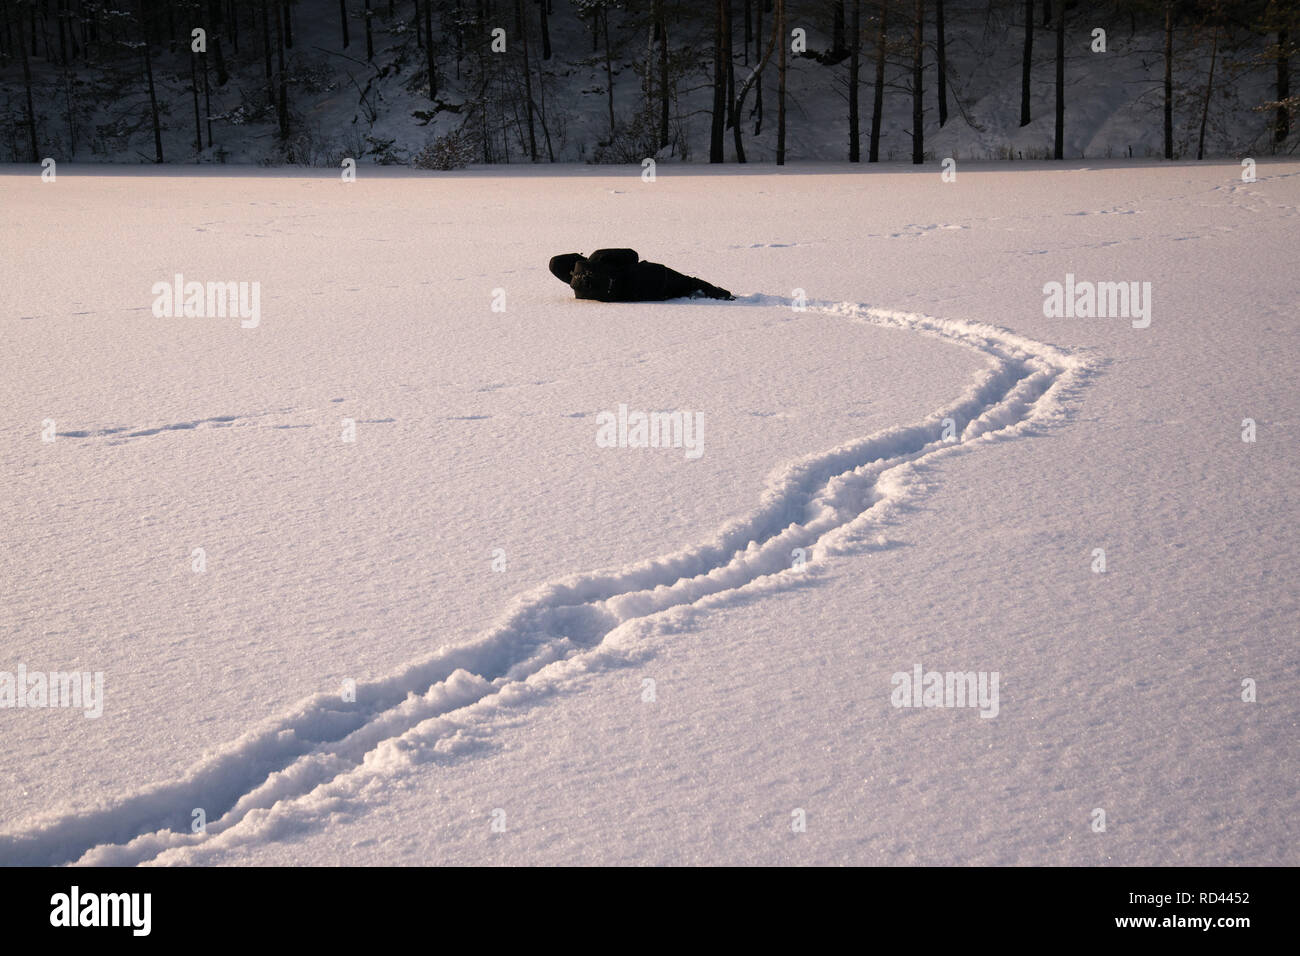 Ein einsamer Mann, Spaziergänge im Schnee. Dramatische Silhouette eines Mannes zu Fuß in einer verschneiten Lichtung im Wald. Kalt. Stockfoto